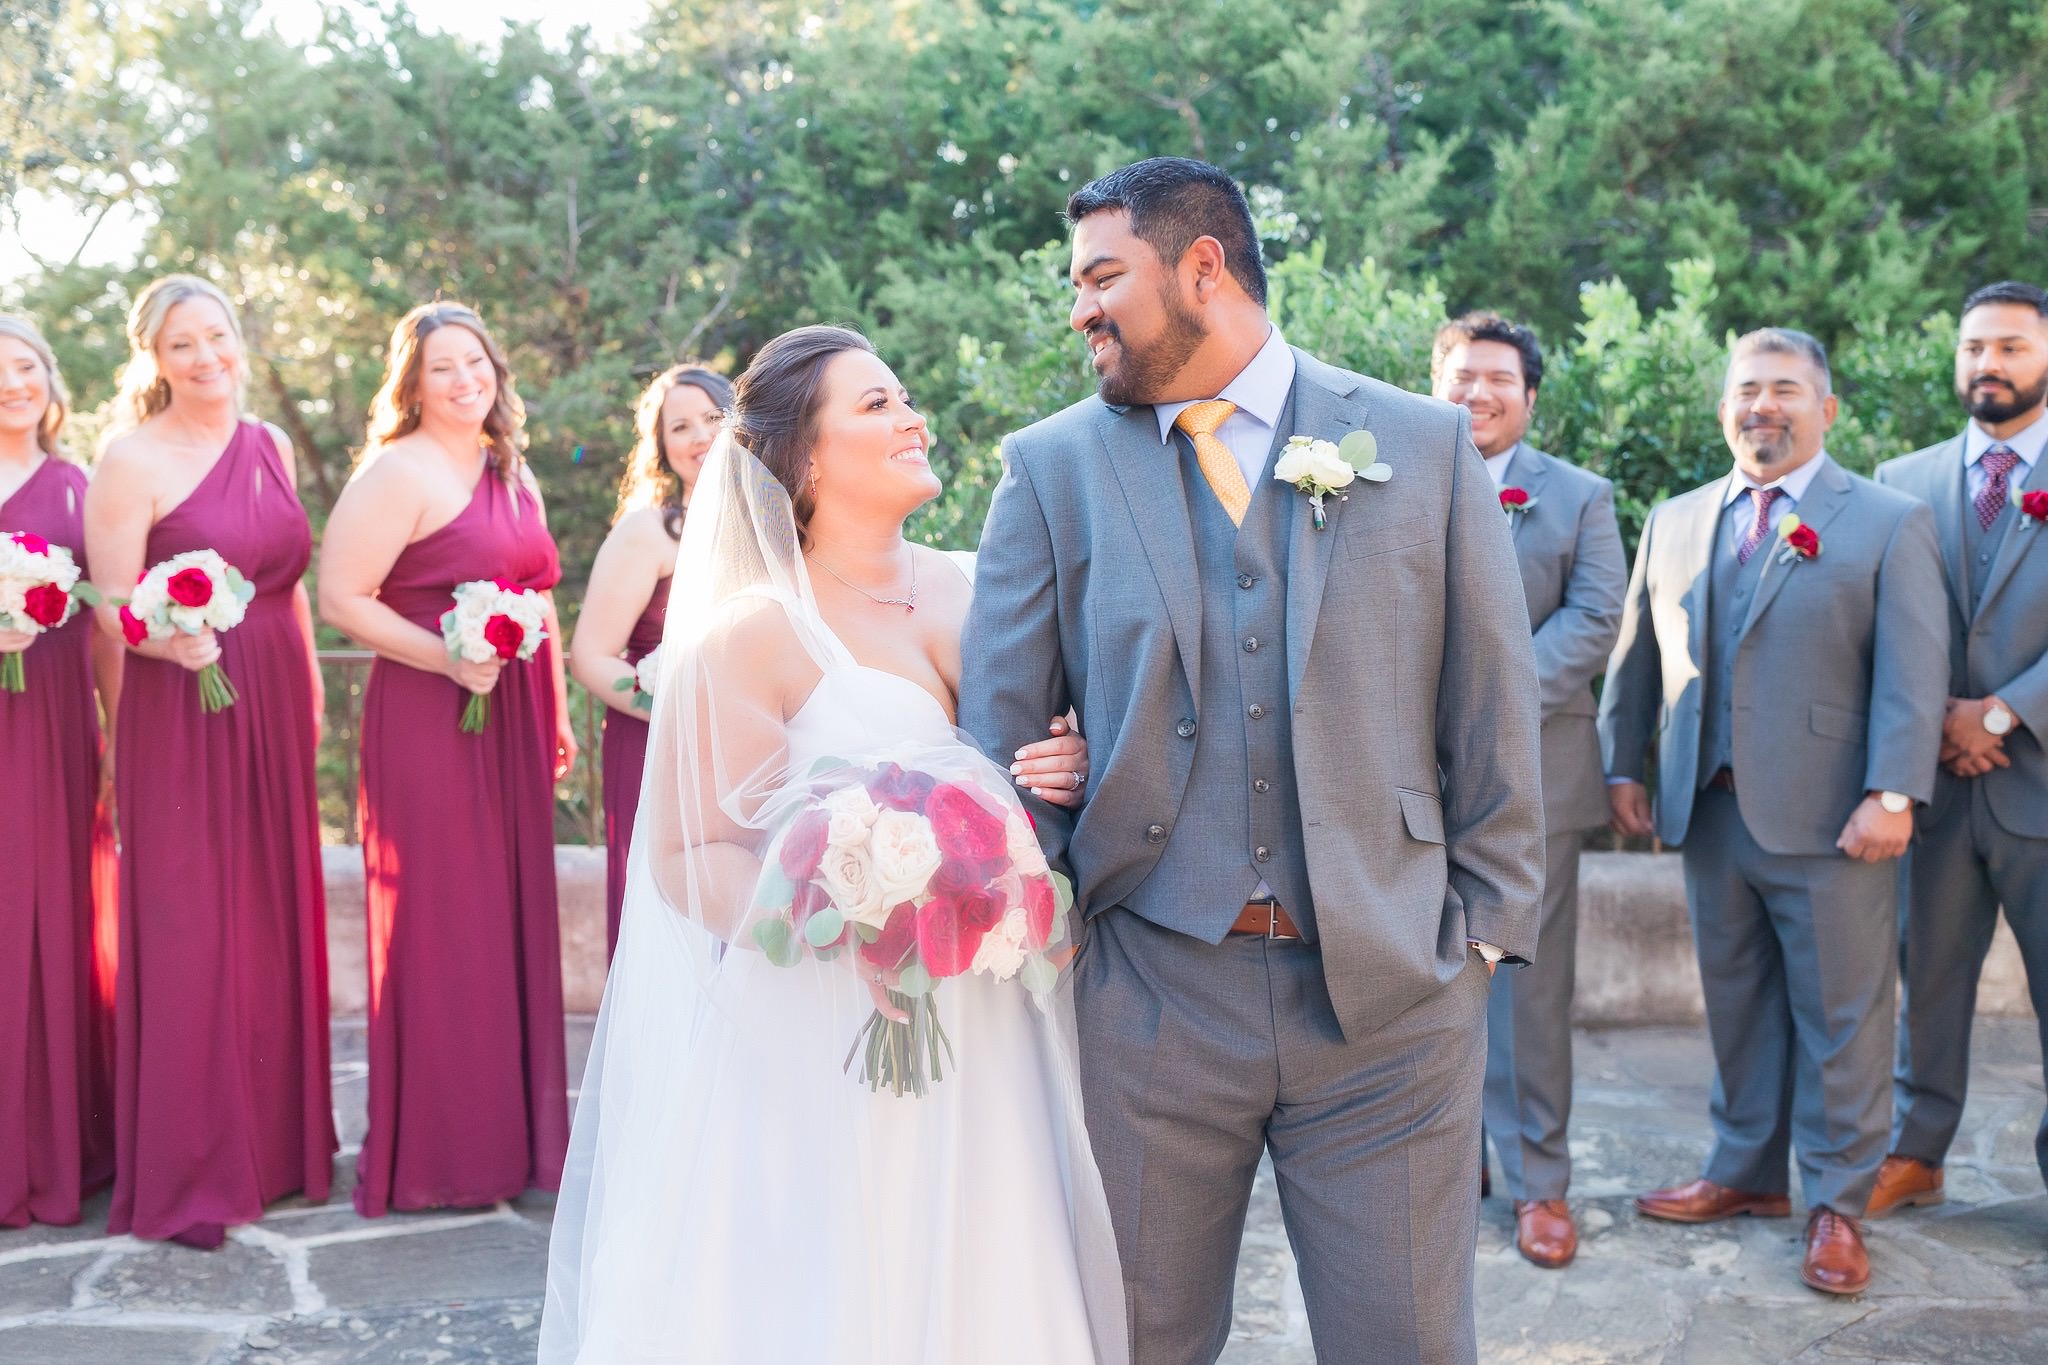 A Burgundy and Blush wedding at Lost Mission in Spring Branch, TX by Dawn Elizabeth Studios, San Antonio Wedding Photographer